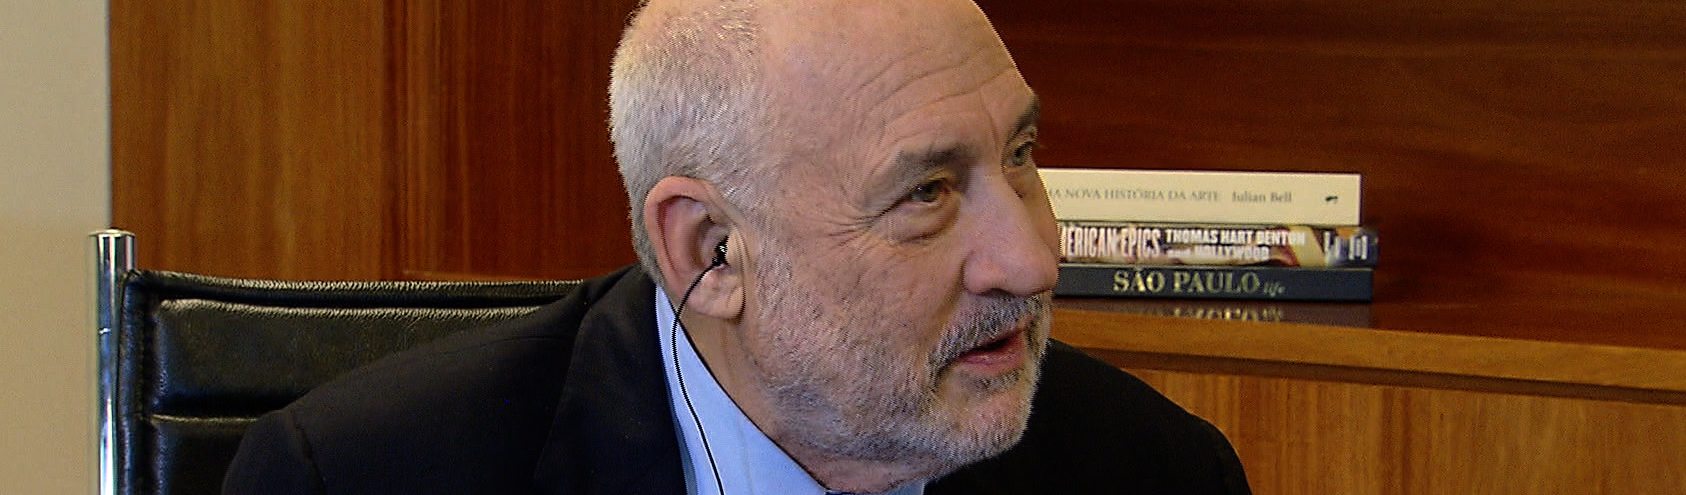 Joseph Stiglitz: ”Em todas as dimensões, o neoliberalismo foi um fracasso incontestável”